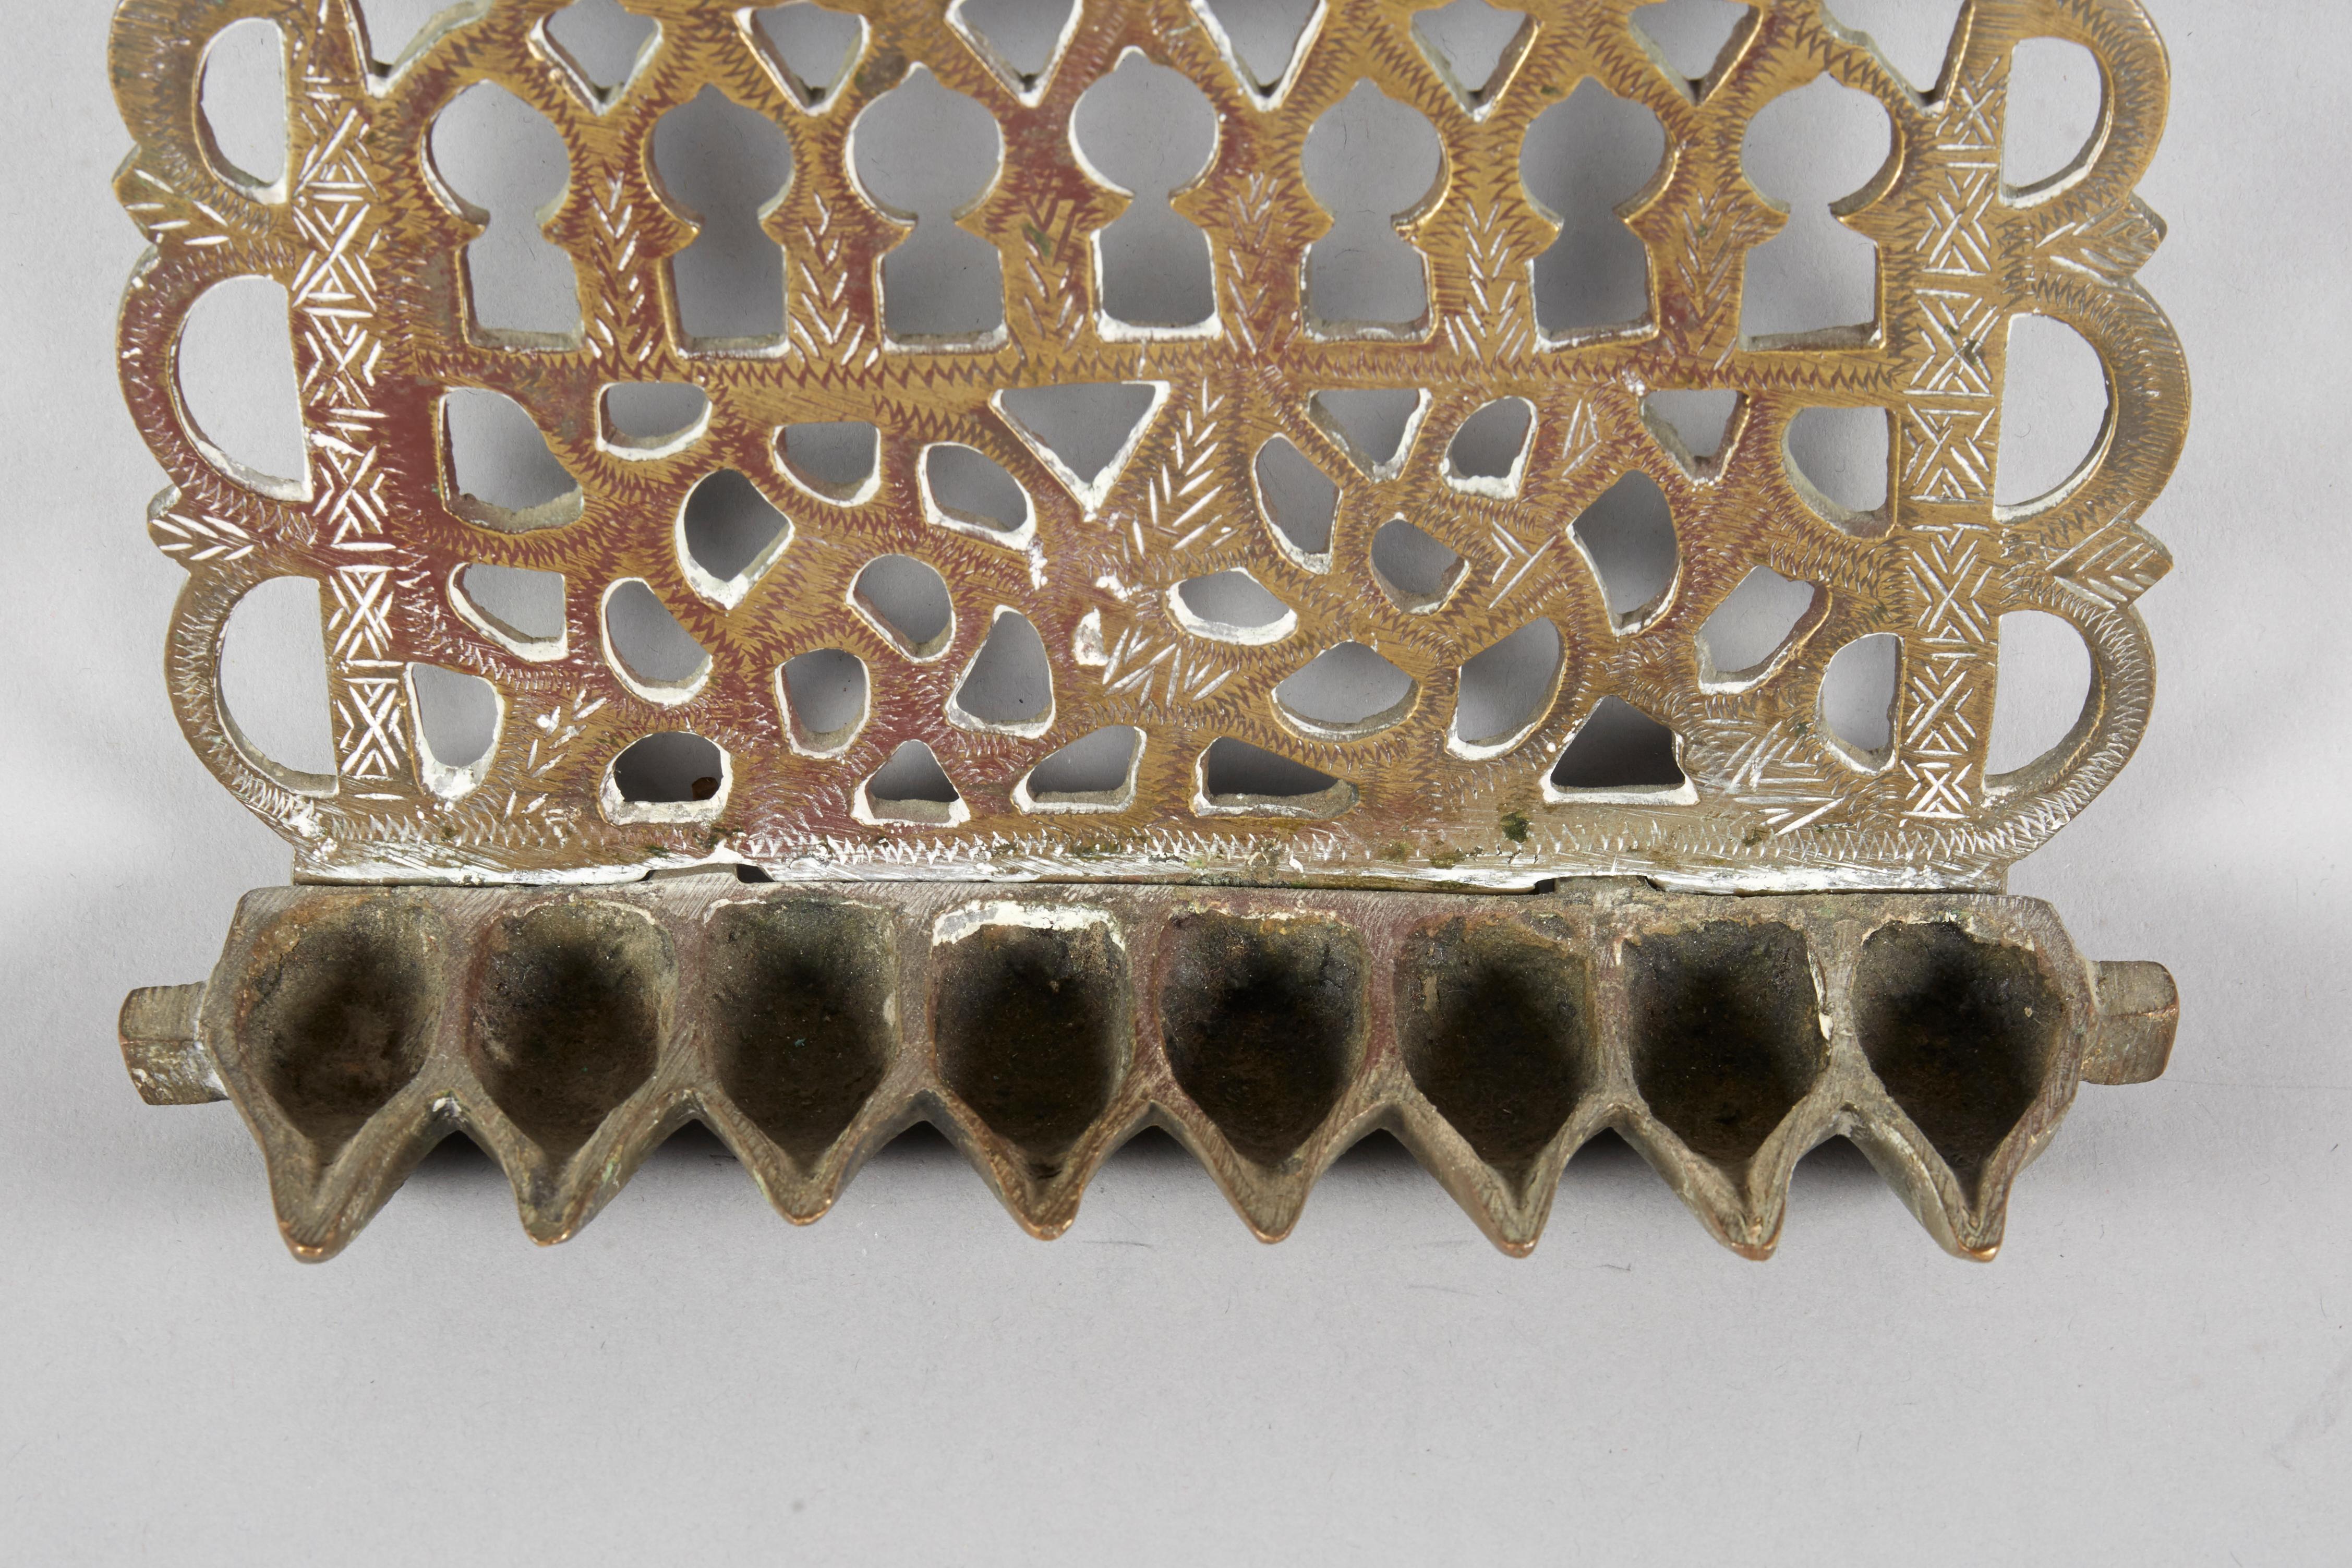 Hängende Chanukka-Lampe Menora aus Messing, Marokko, um 1900. 
Durchbrochene Verzierungen, Gravuren und Vogeldarstellungen auf beiden Seiten.
Die Rückplatte aus schwerem Messingguss ist durchbrochen und mit Blattranken und einer Reihe von acht